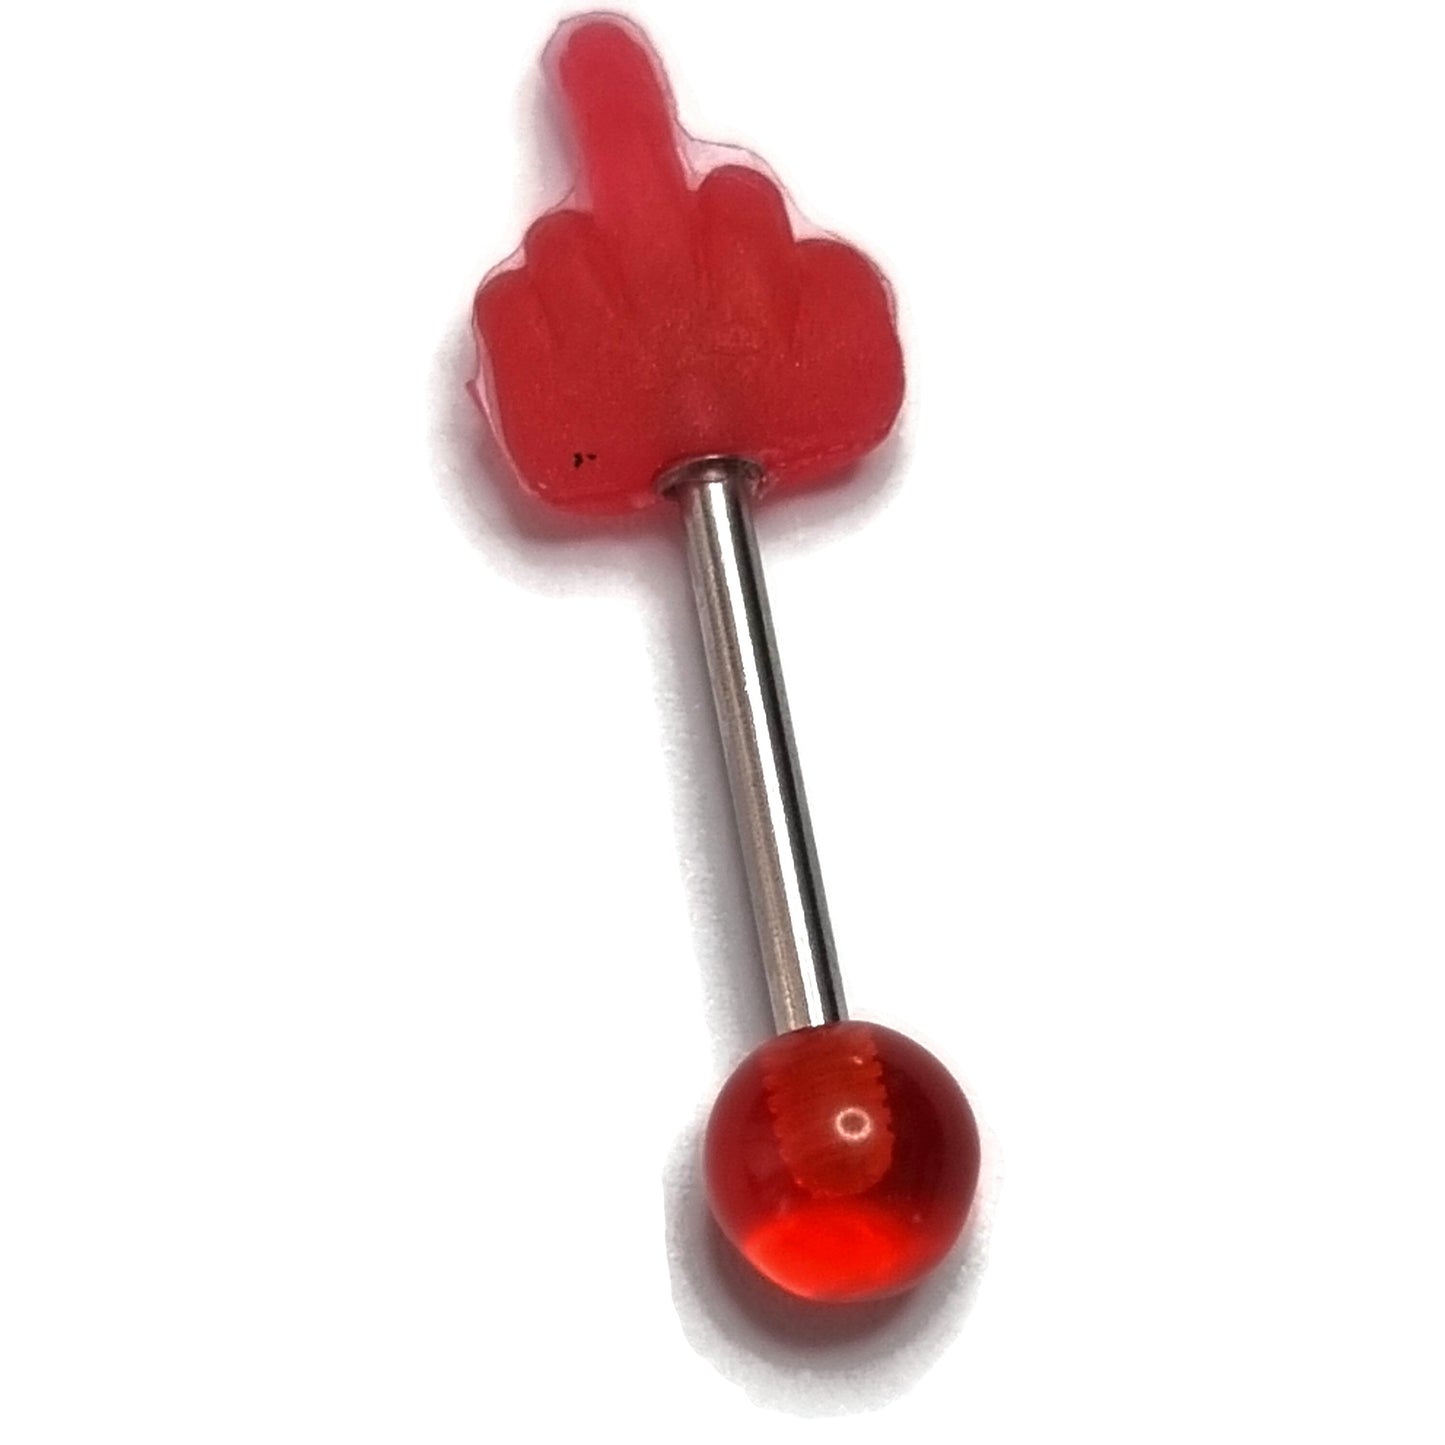 Rode Hartvormige Glazen Bal Met Metalen Staaf Voor Stalen Tongpiercing Middelvinger